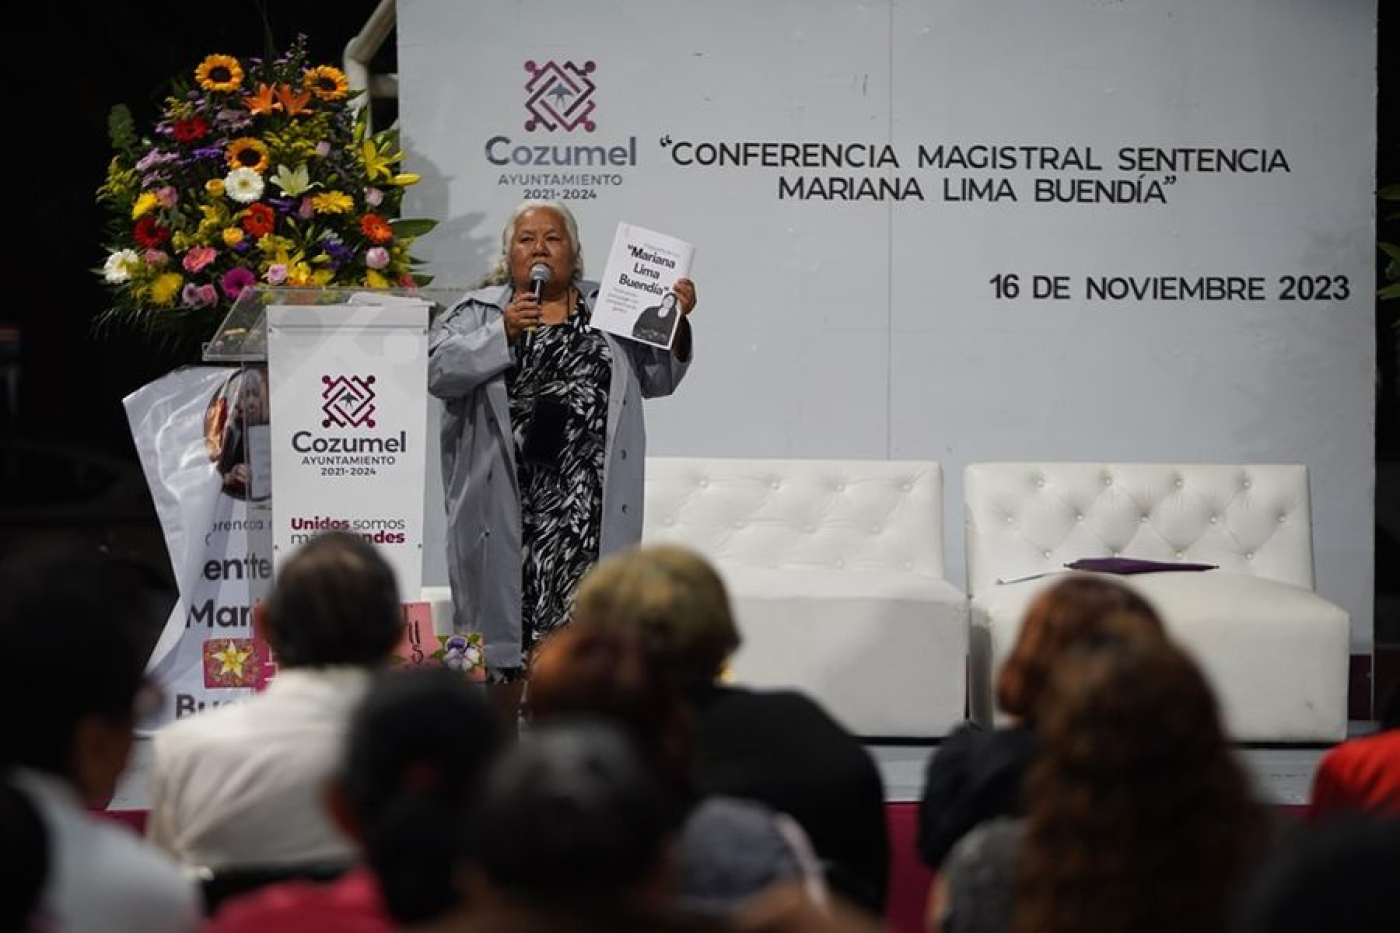 Se presenta con gran éxito la conferencia magistral “Sentencia Mariana Lima Buendía”